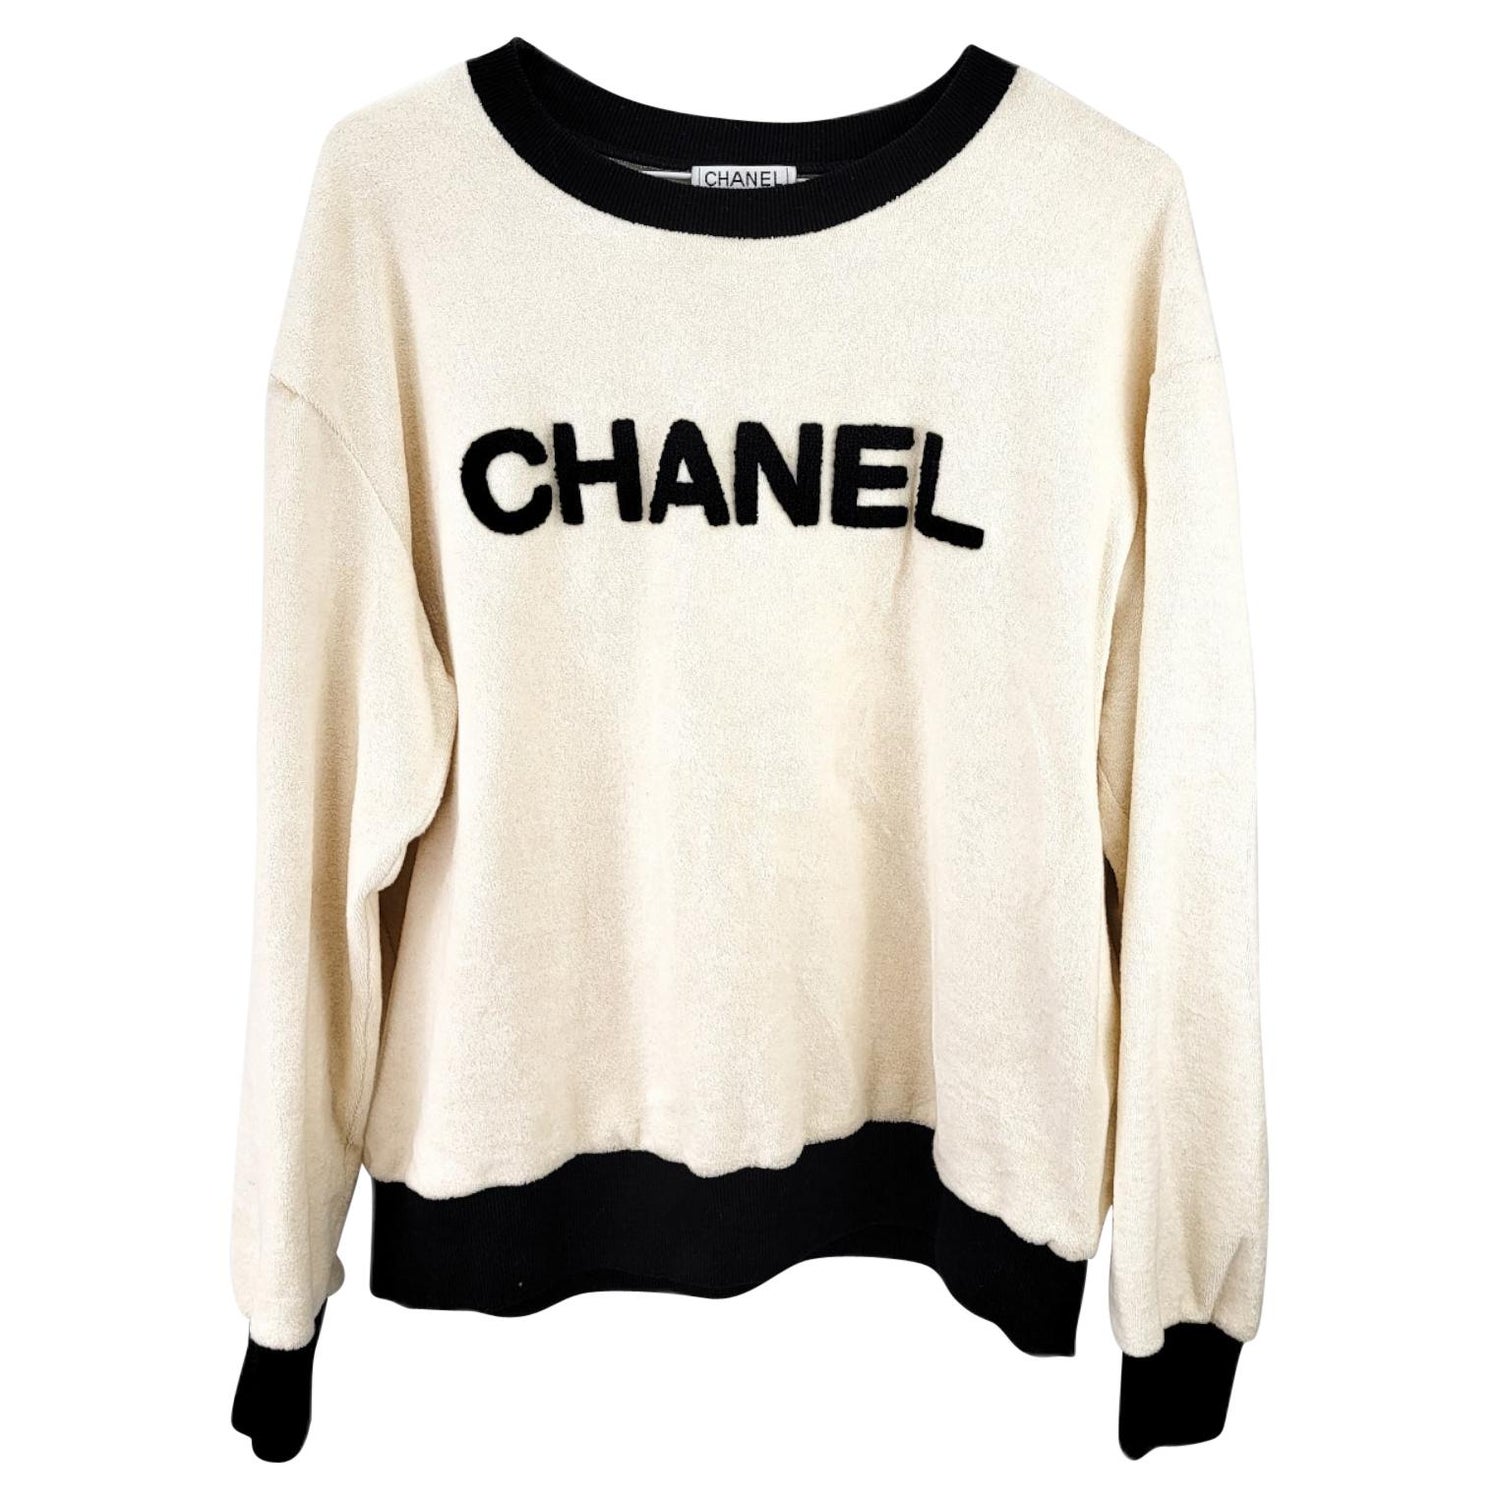 Chanel Sweatshirt - 5 For Sale on 1stDibs | vintage chanel sweatshirt, coco chanel  sweatshirt, chanel white sweatshirt